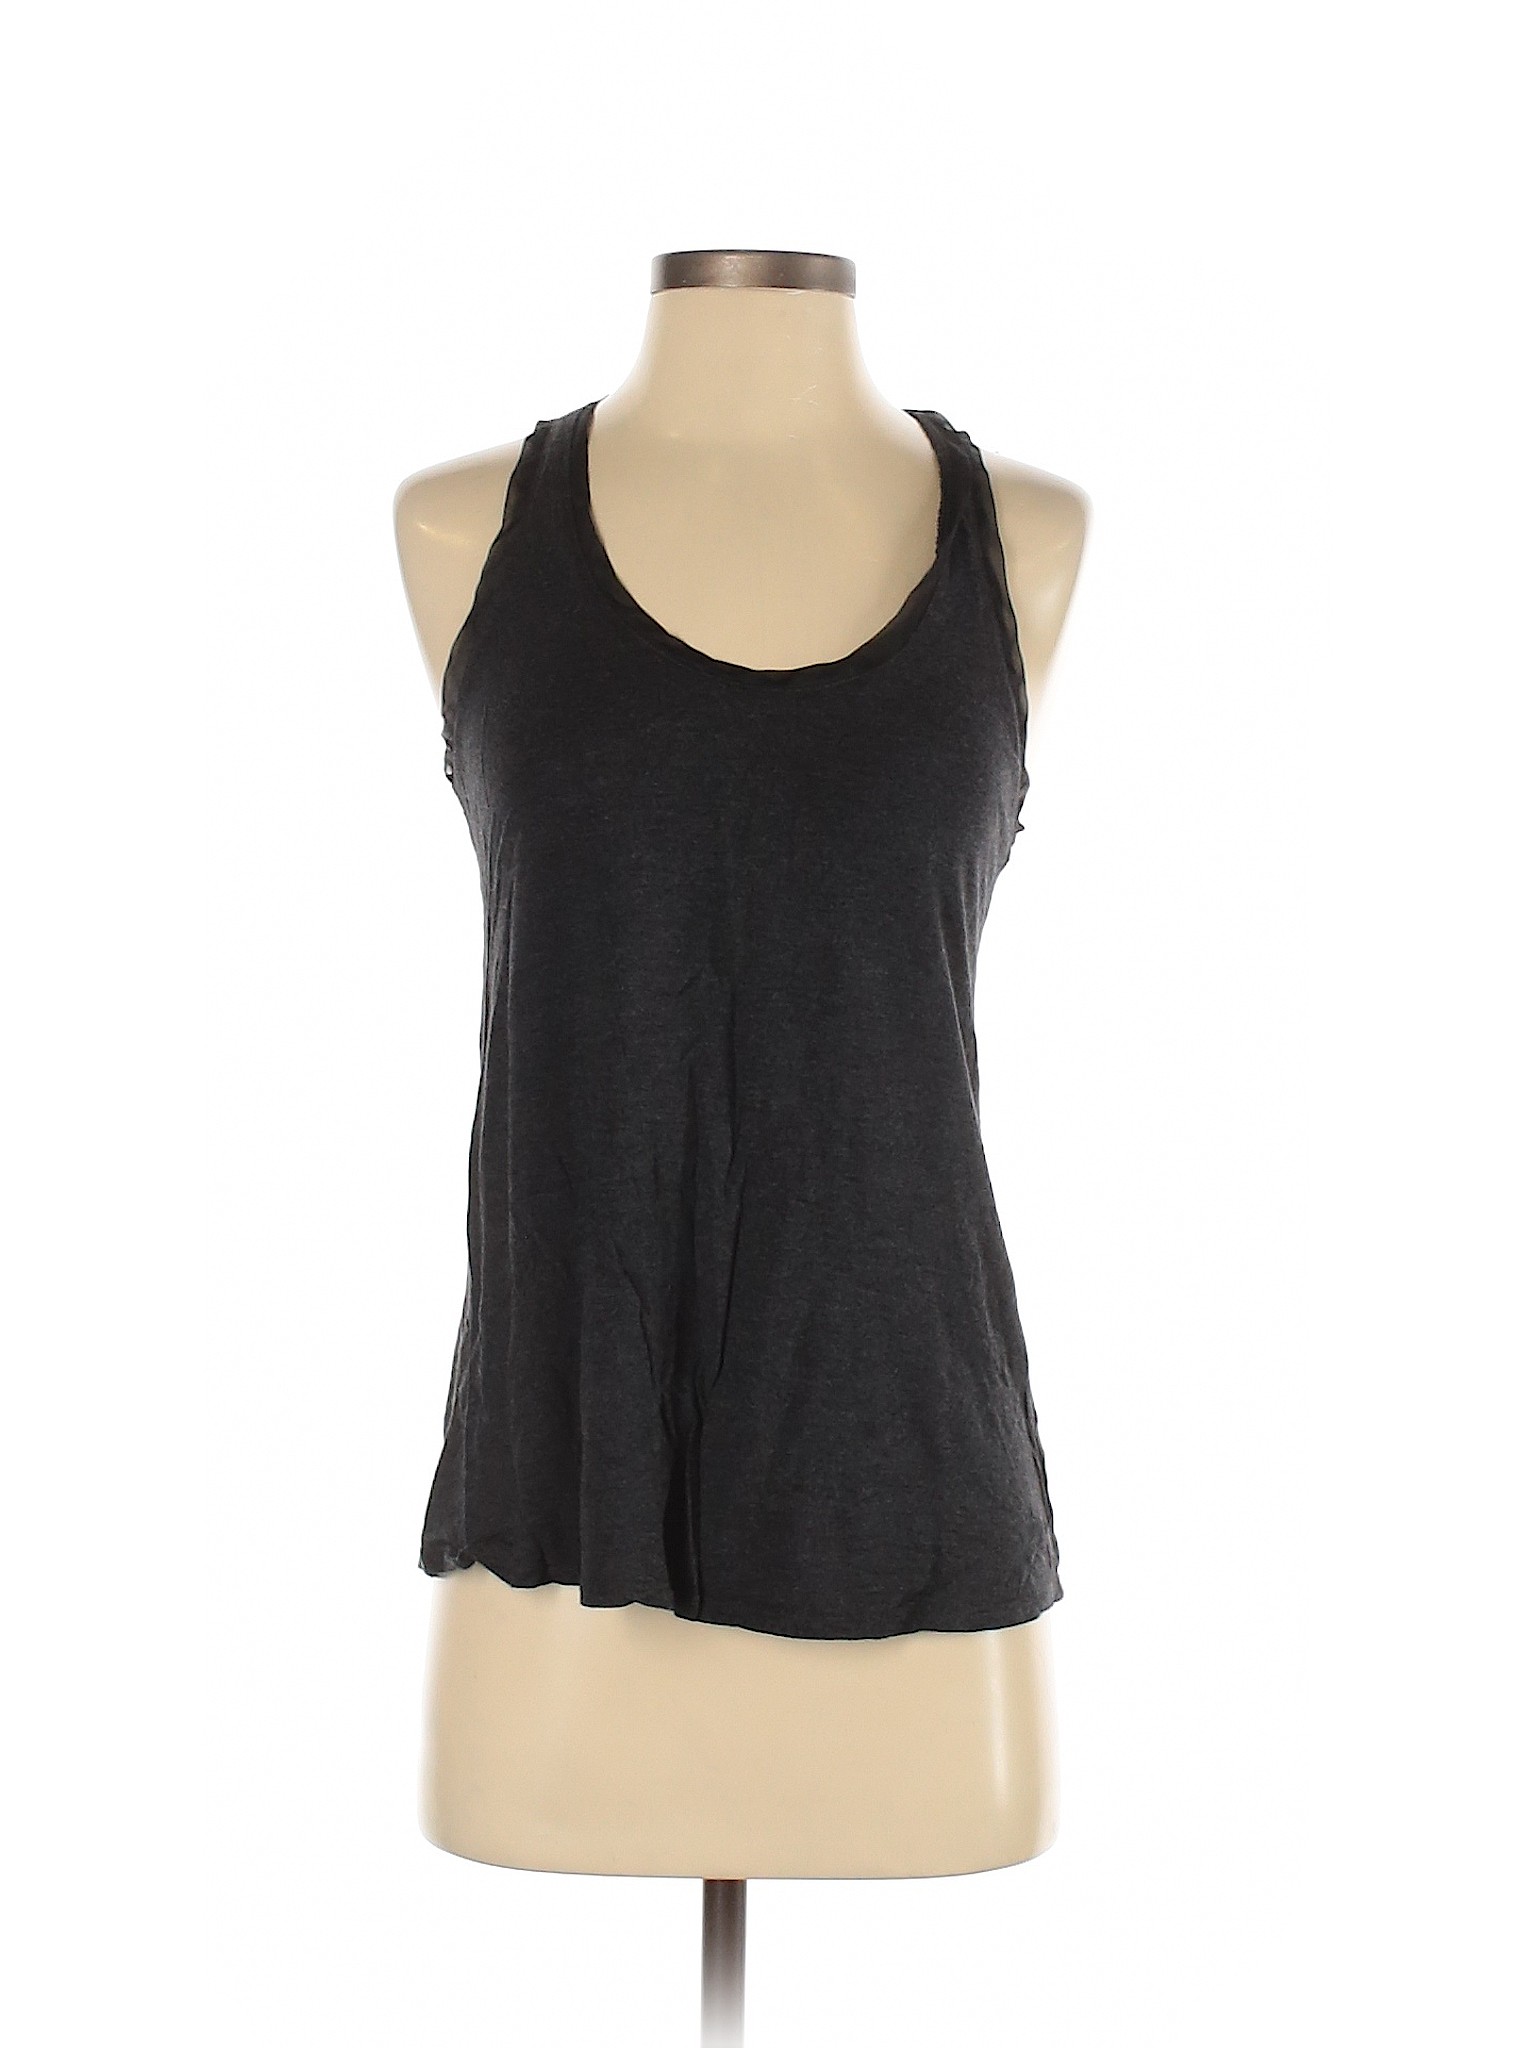 Gap Women Gray Sleeveless T-Shirt S | eBay